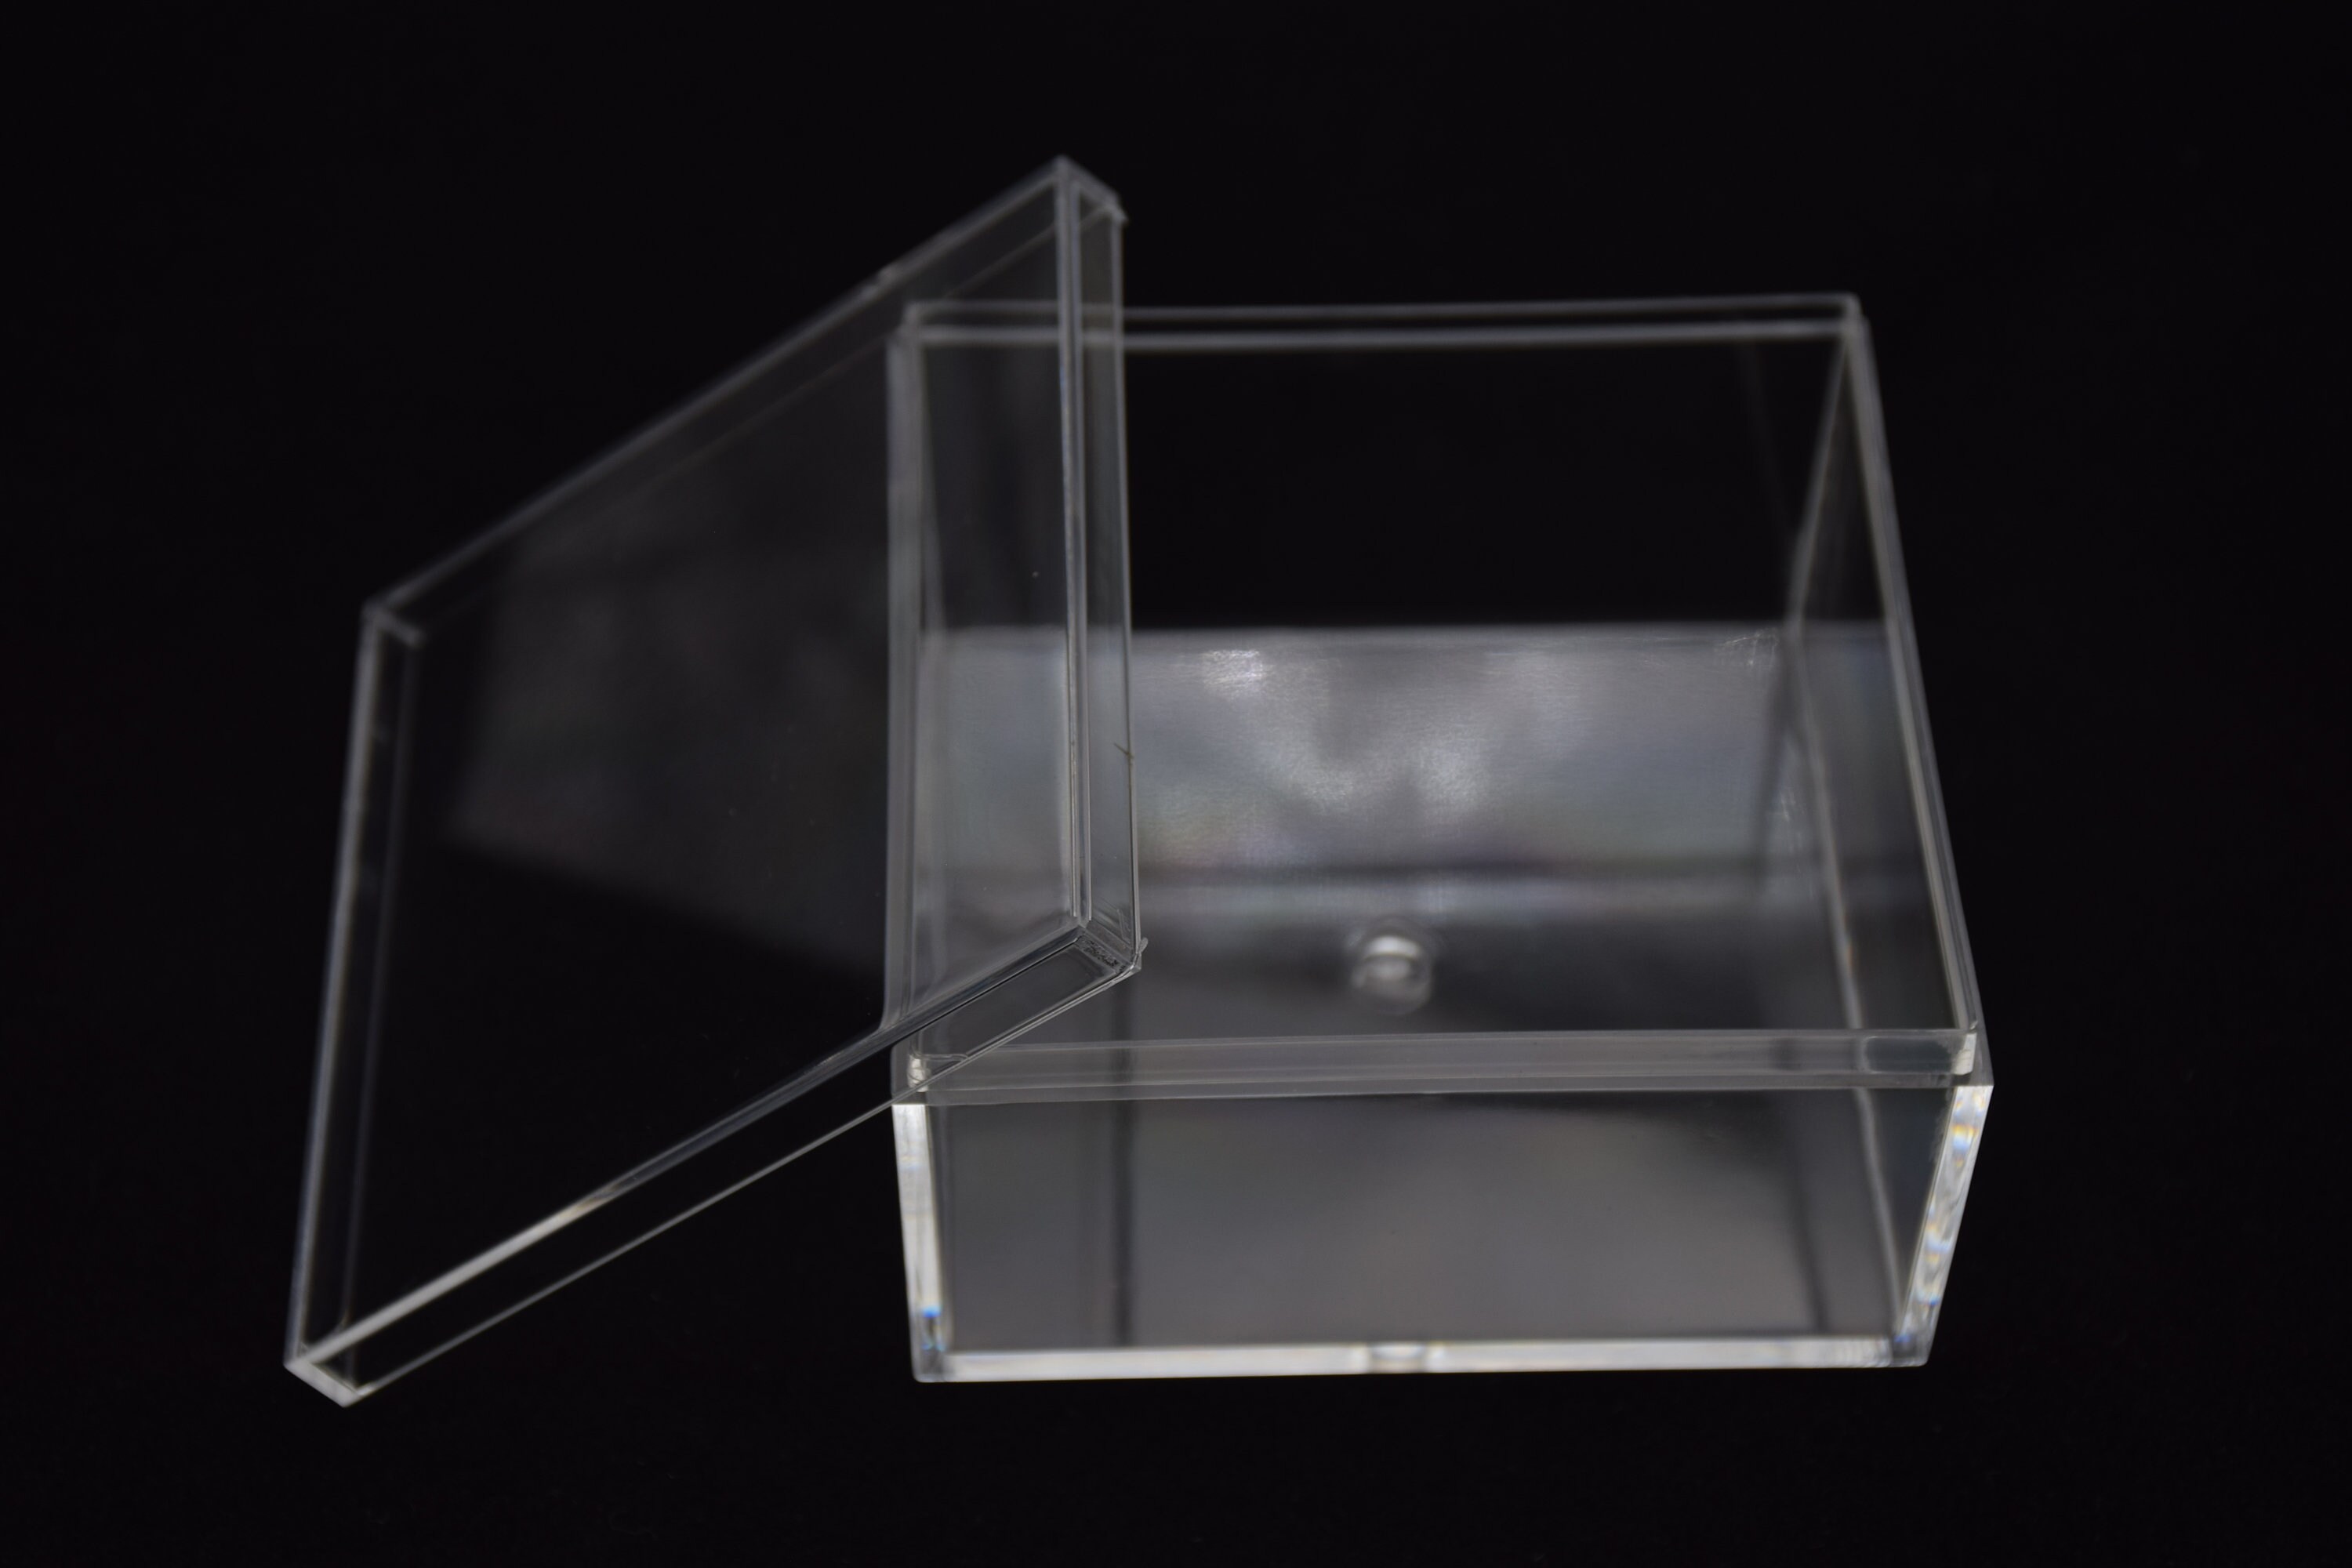 Boîte en plastique transparente 75L - Clip N' Box